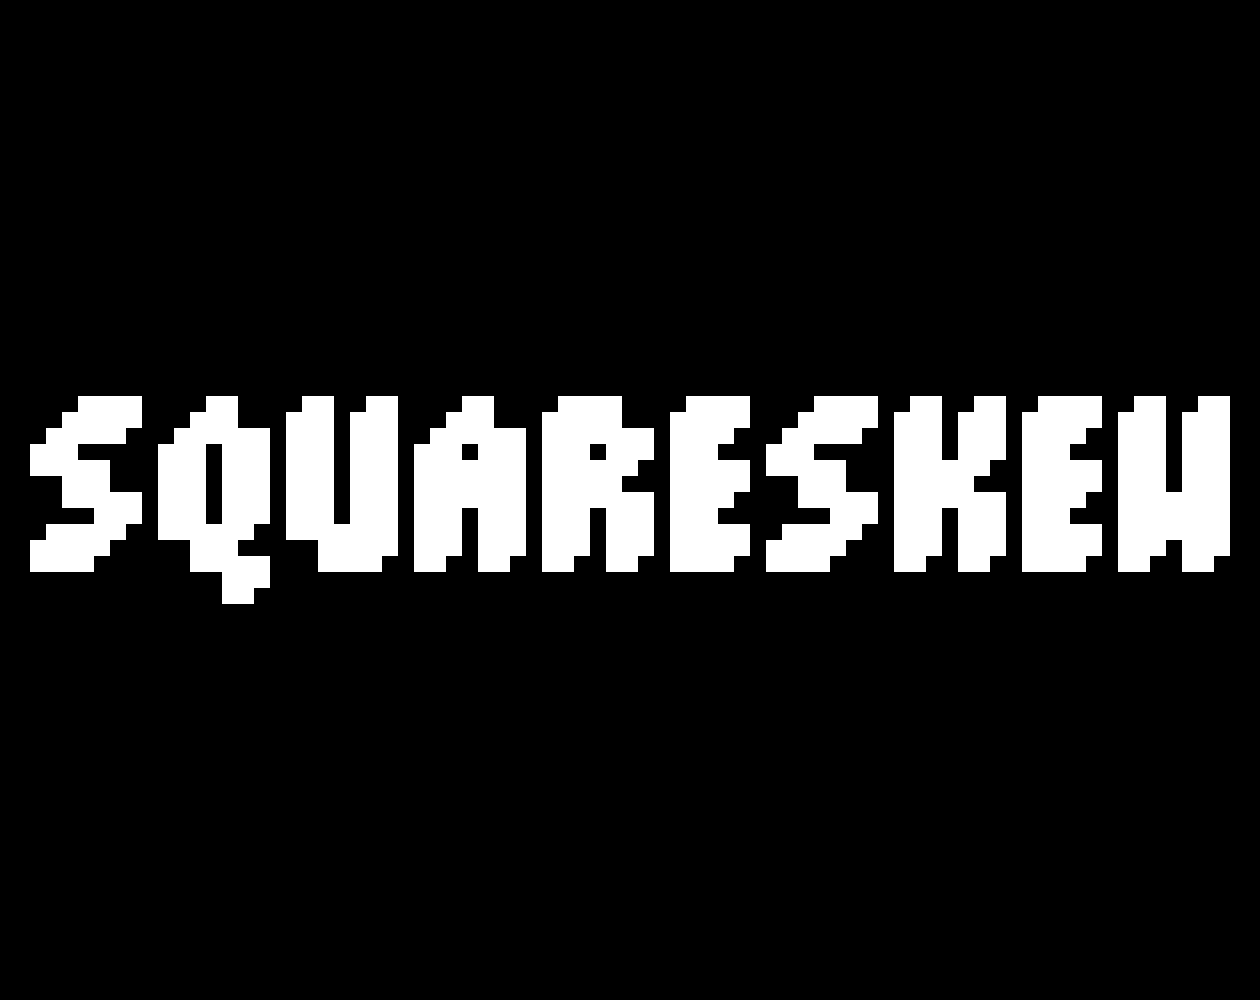 Squareskew